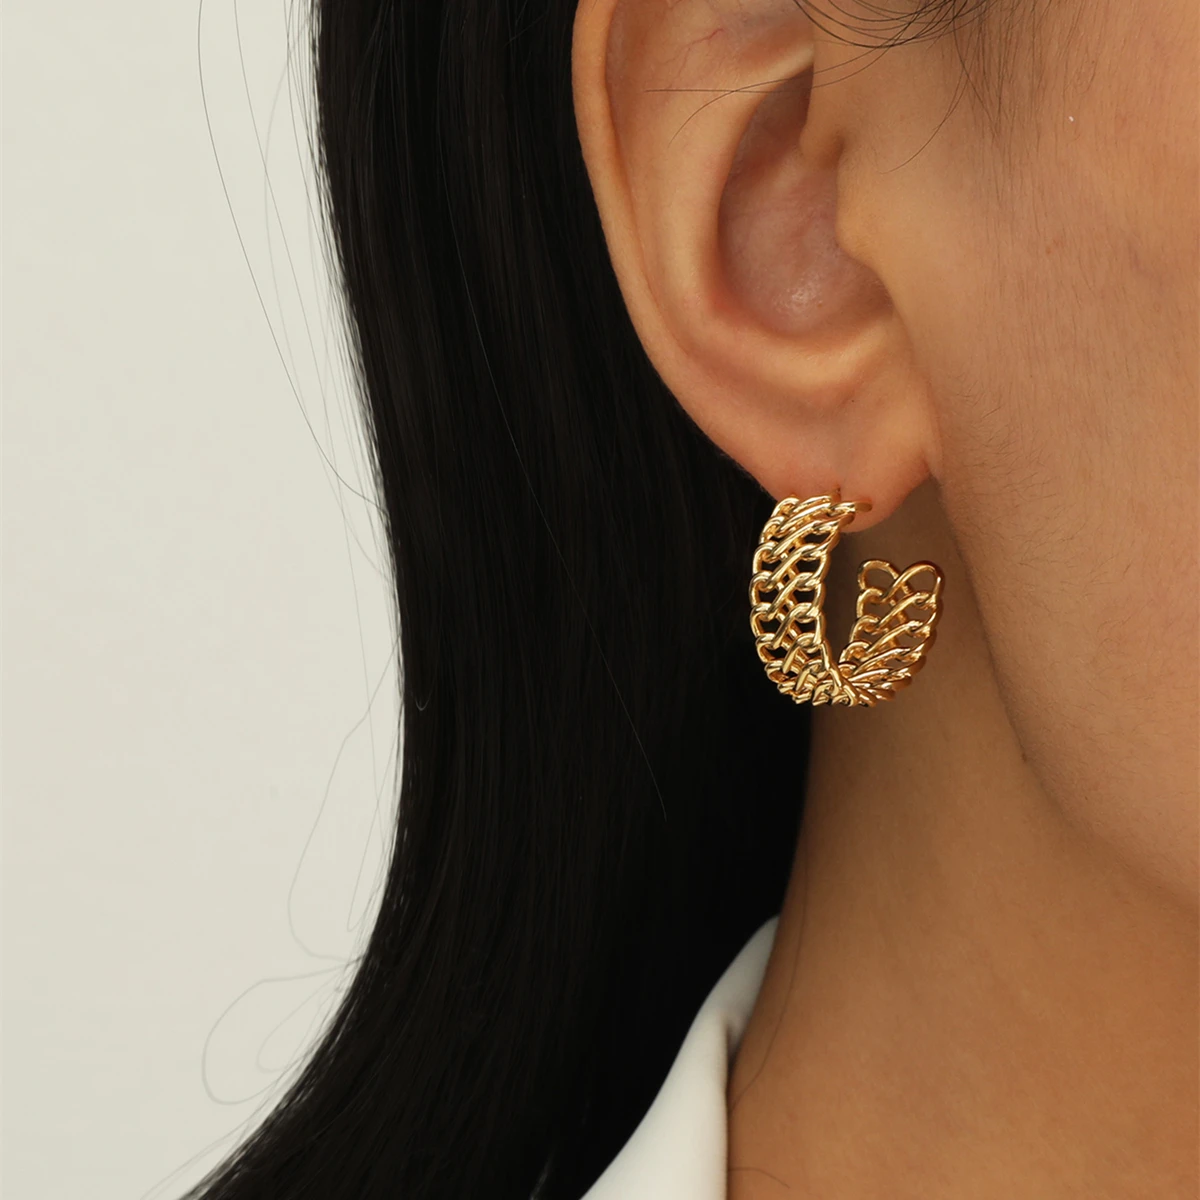 MOREDEAR Fashion Vintage Double Weave Design 925 Silver Needle Hoop Earrings Women Jewelry